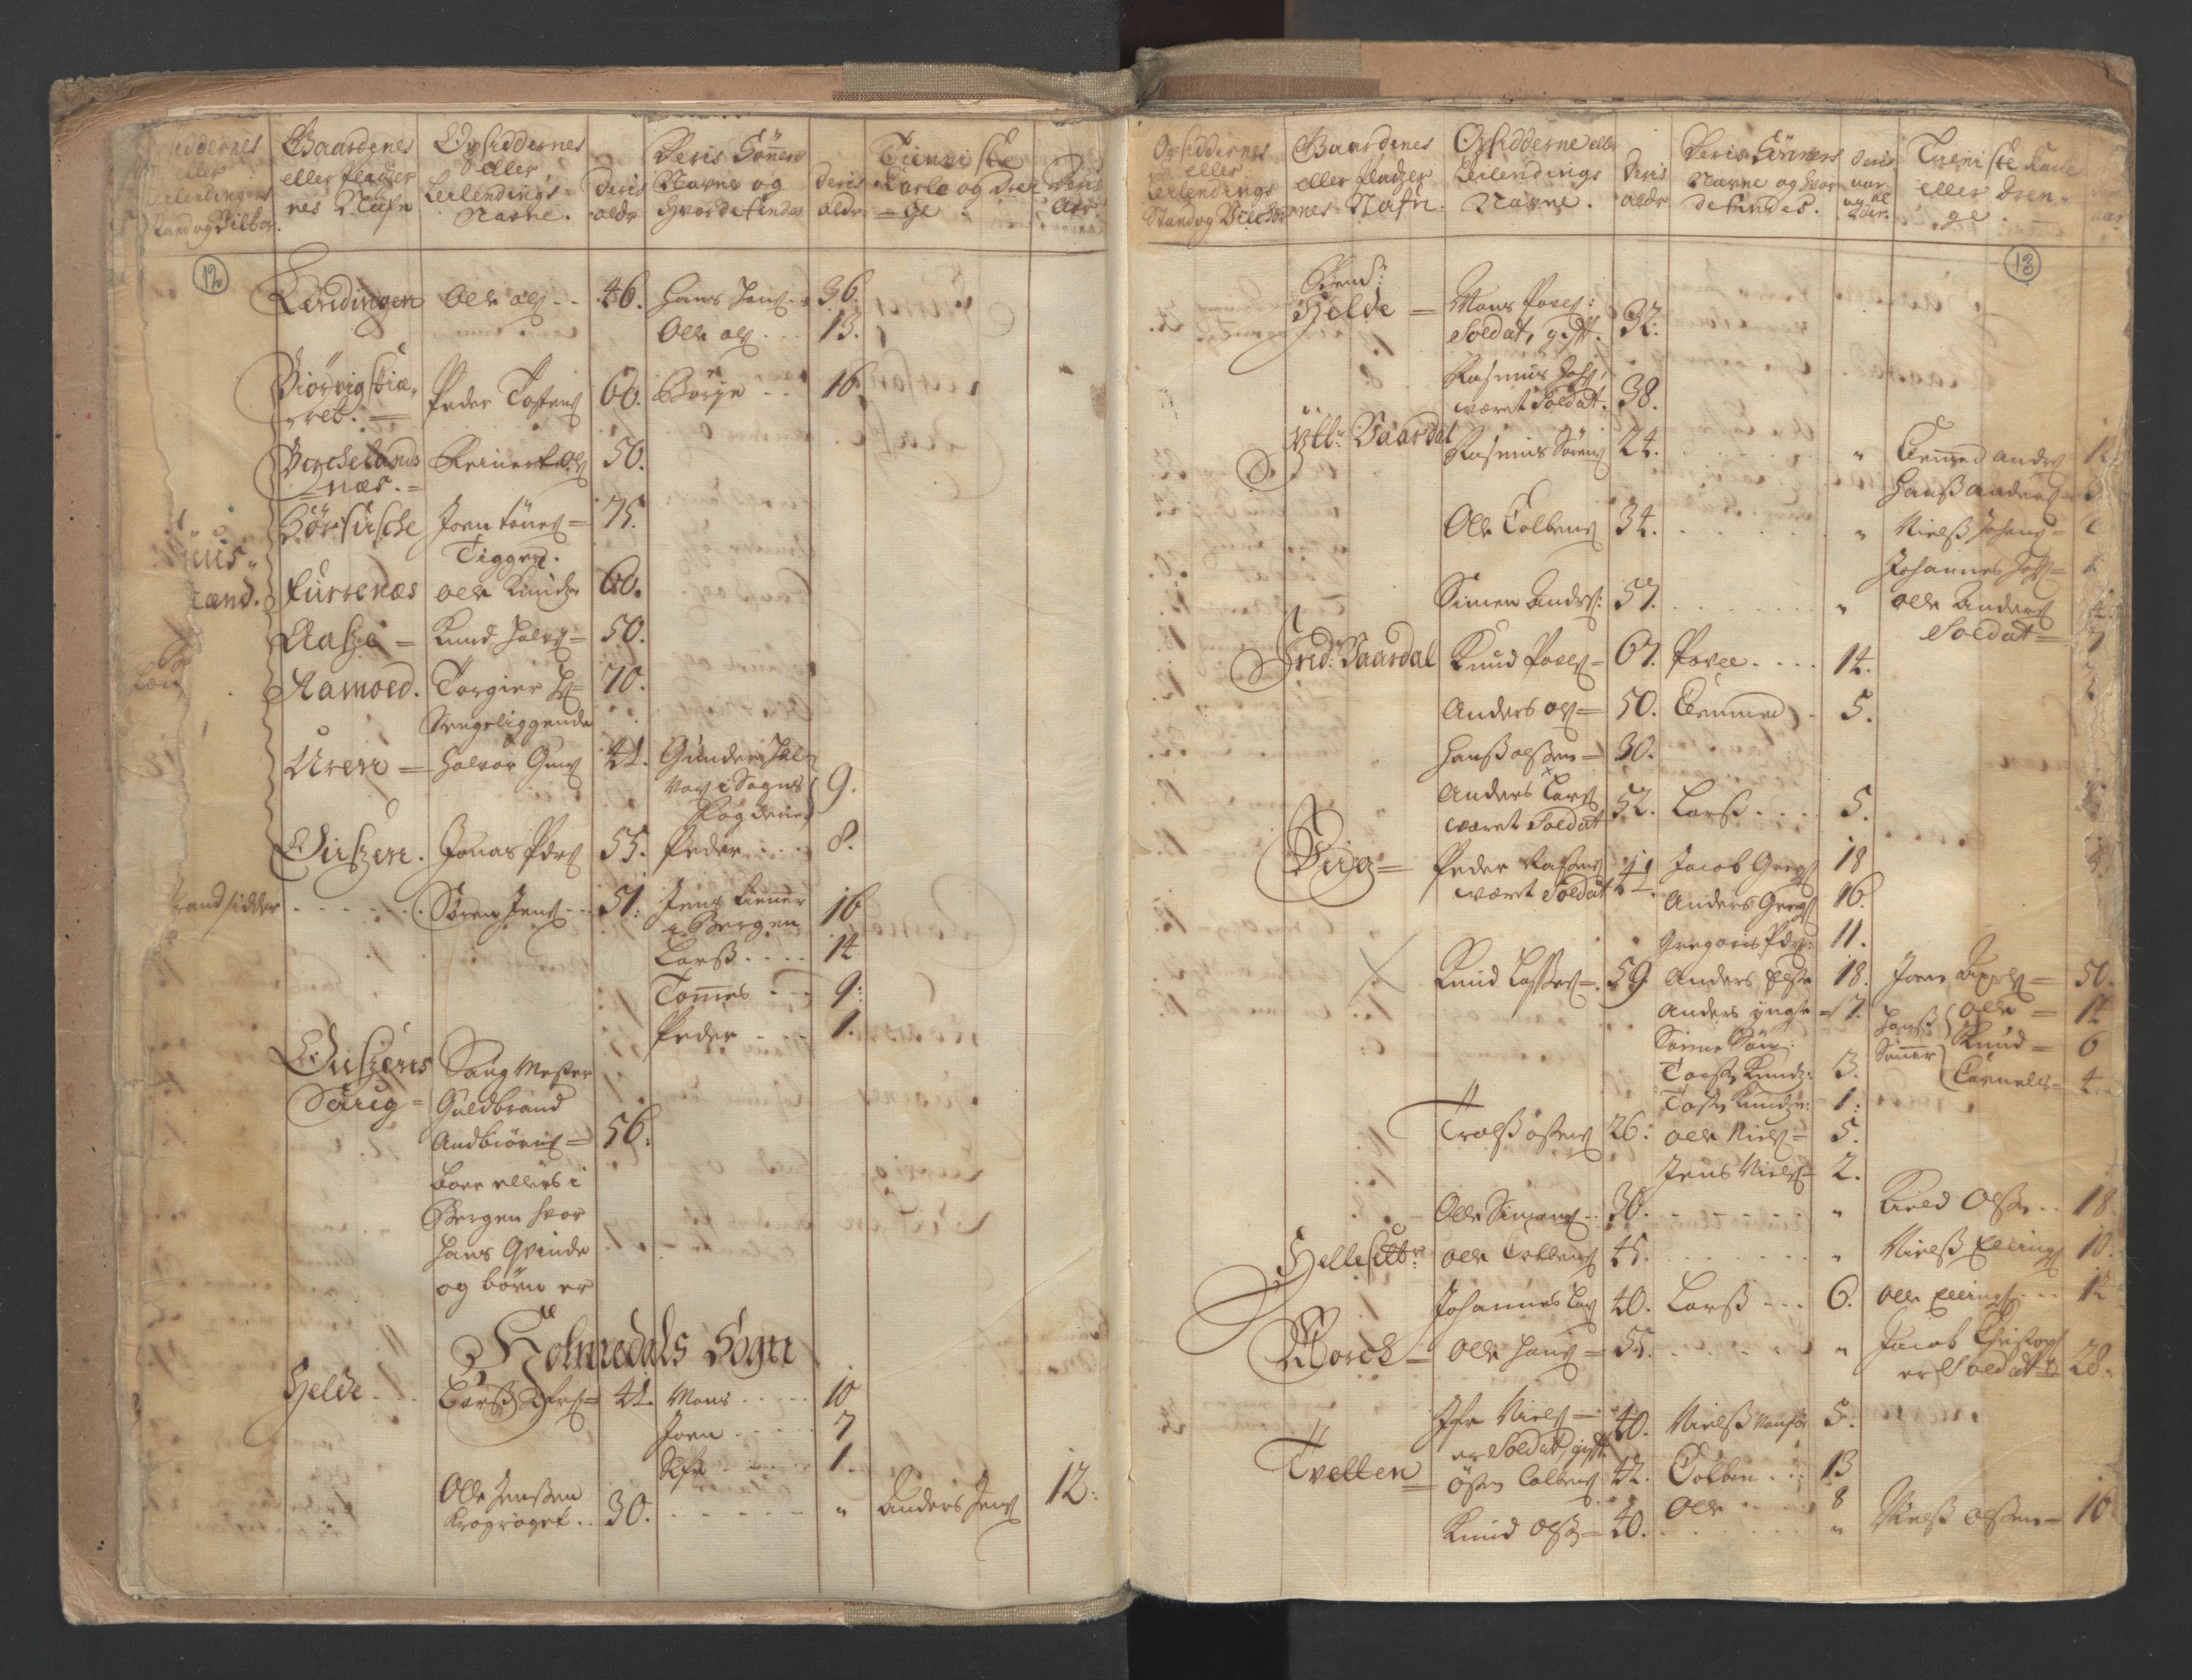 RA, Census (manntall) 1701, no. 9: Sunnfjord fogderi, Nordfjord fogderi and Svanø birk, 1701, p. 12-13